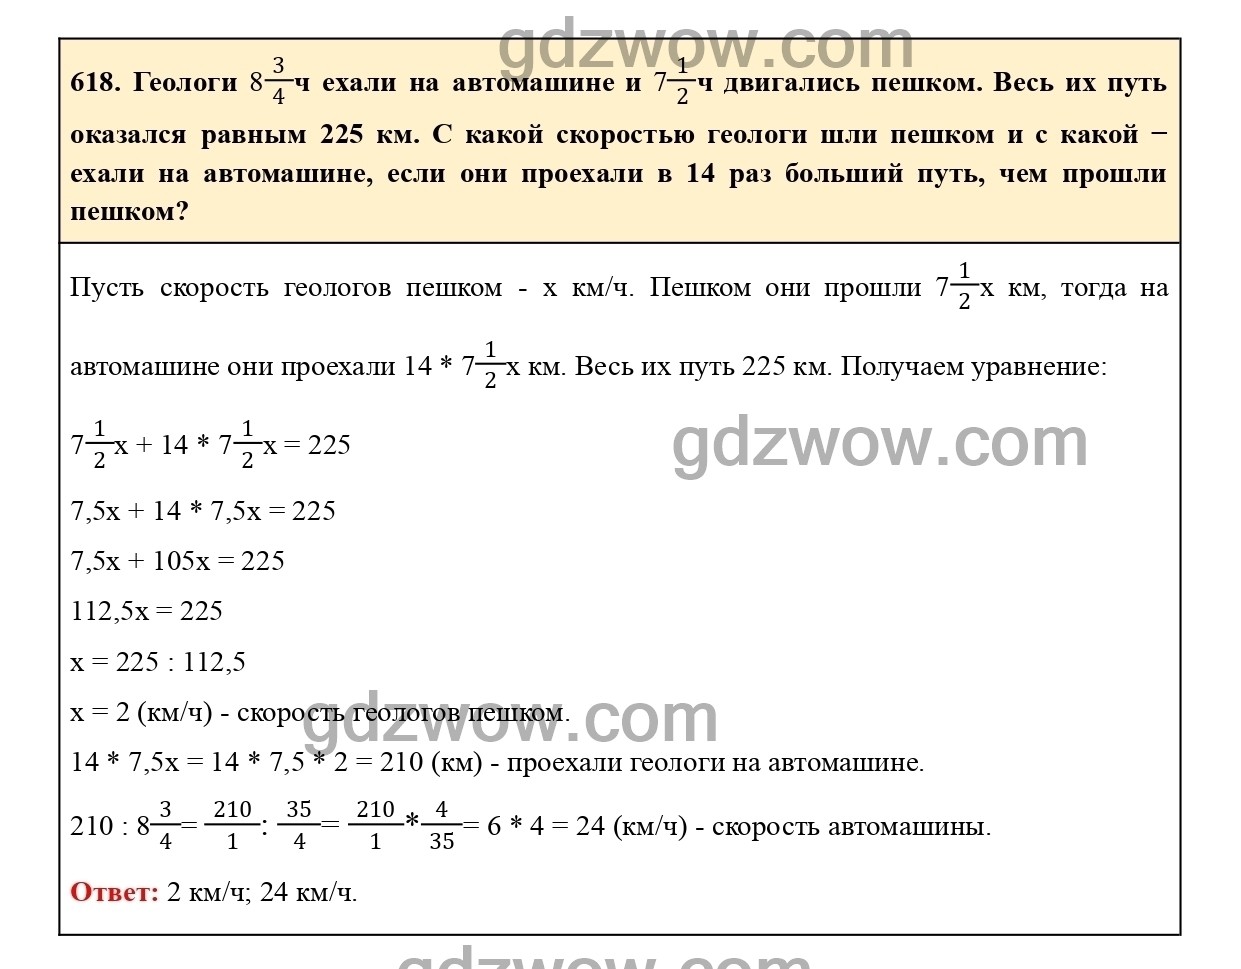 Номер 623 - ГДЗ по Математике 6 класс Учебник Виленкин, Жохов, Чесноков, Шварцбурд 2020. Часть 1 (решебник) - GDZwow